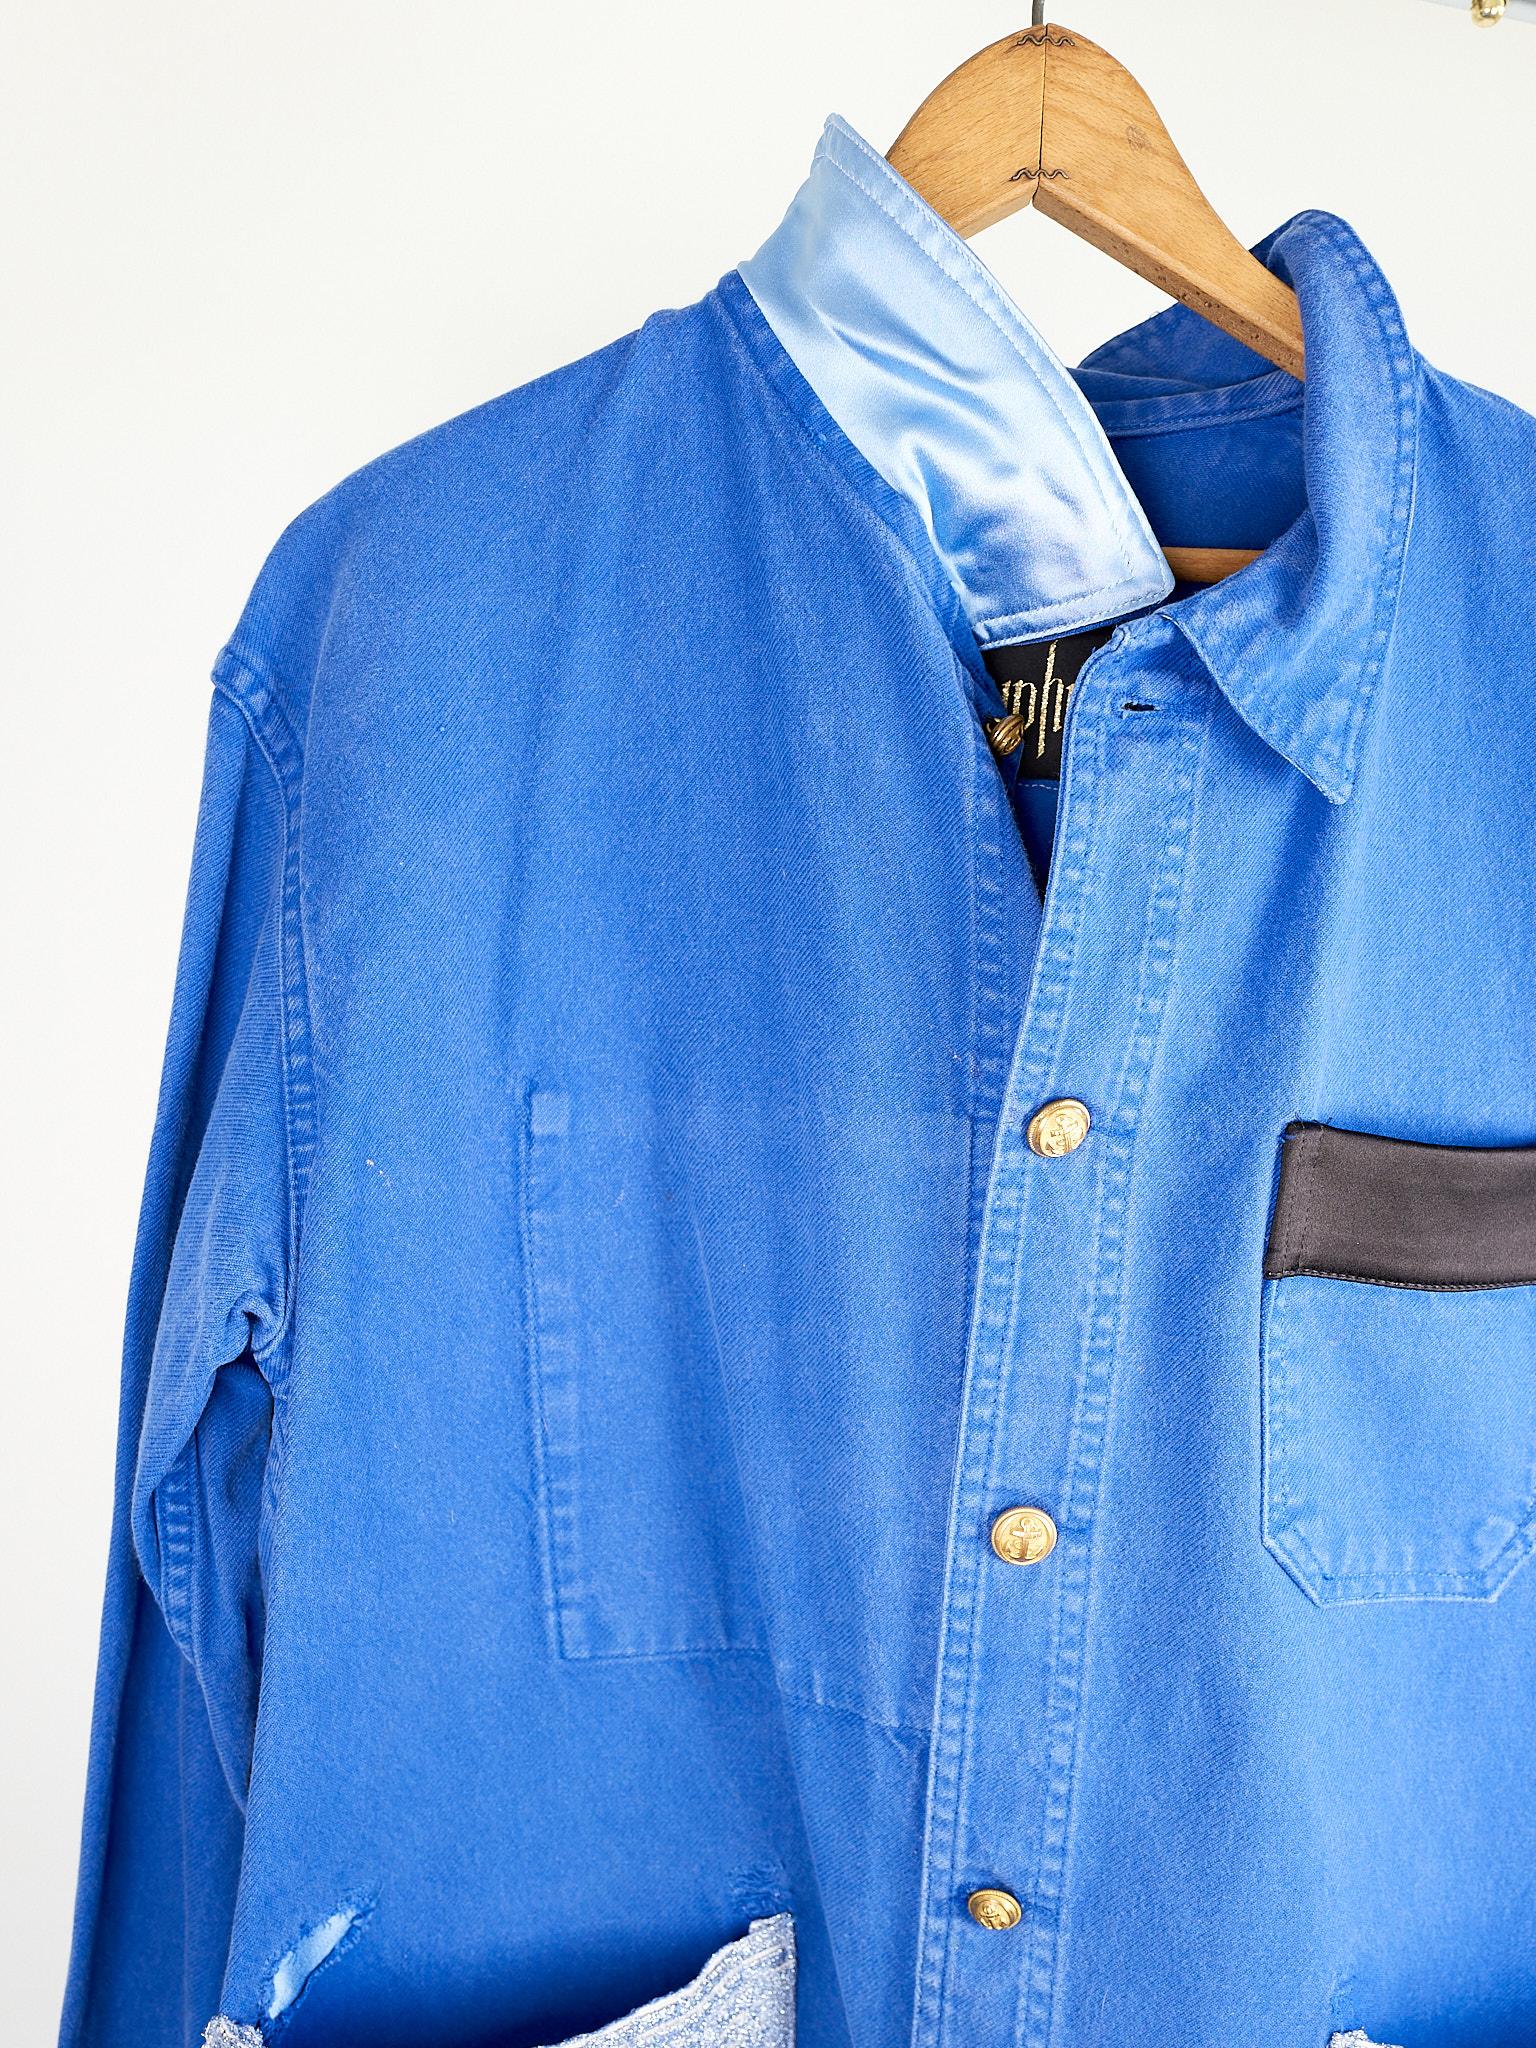 Women's Cobalt Blue Jacket  Back Multi Color Pattern Fringes Glitter Pockets French Work